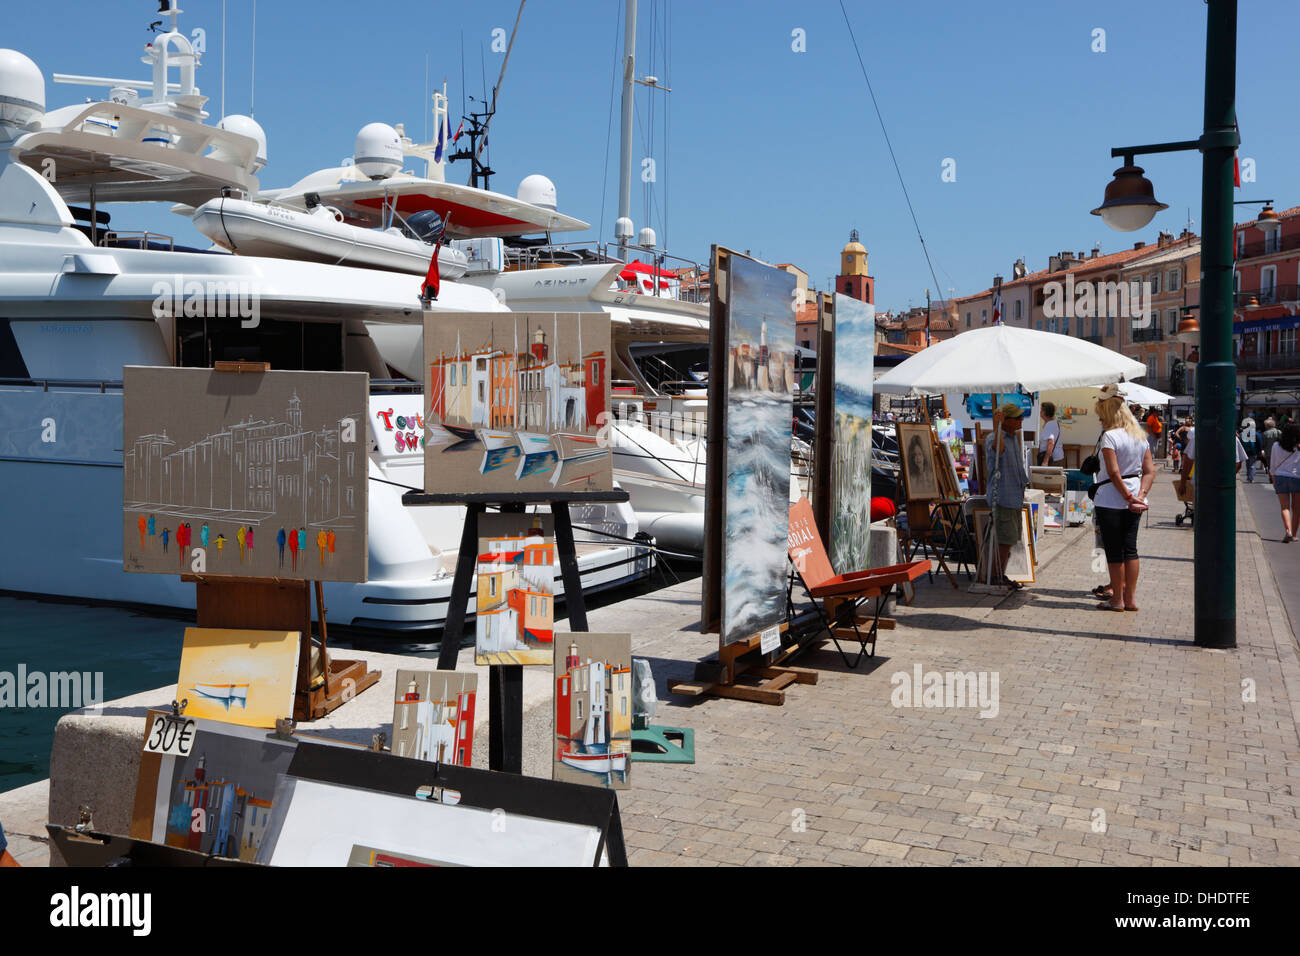 Le long du marché de l'art, le port de Saint-Tropez, Var, Provence-Alpes-Côte d'Azur, Provence, France, Europe Banque D'Images